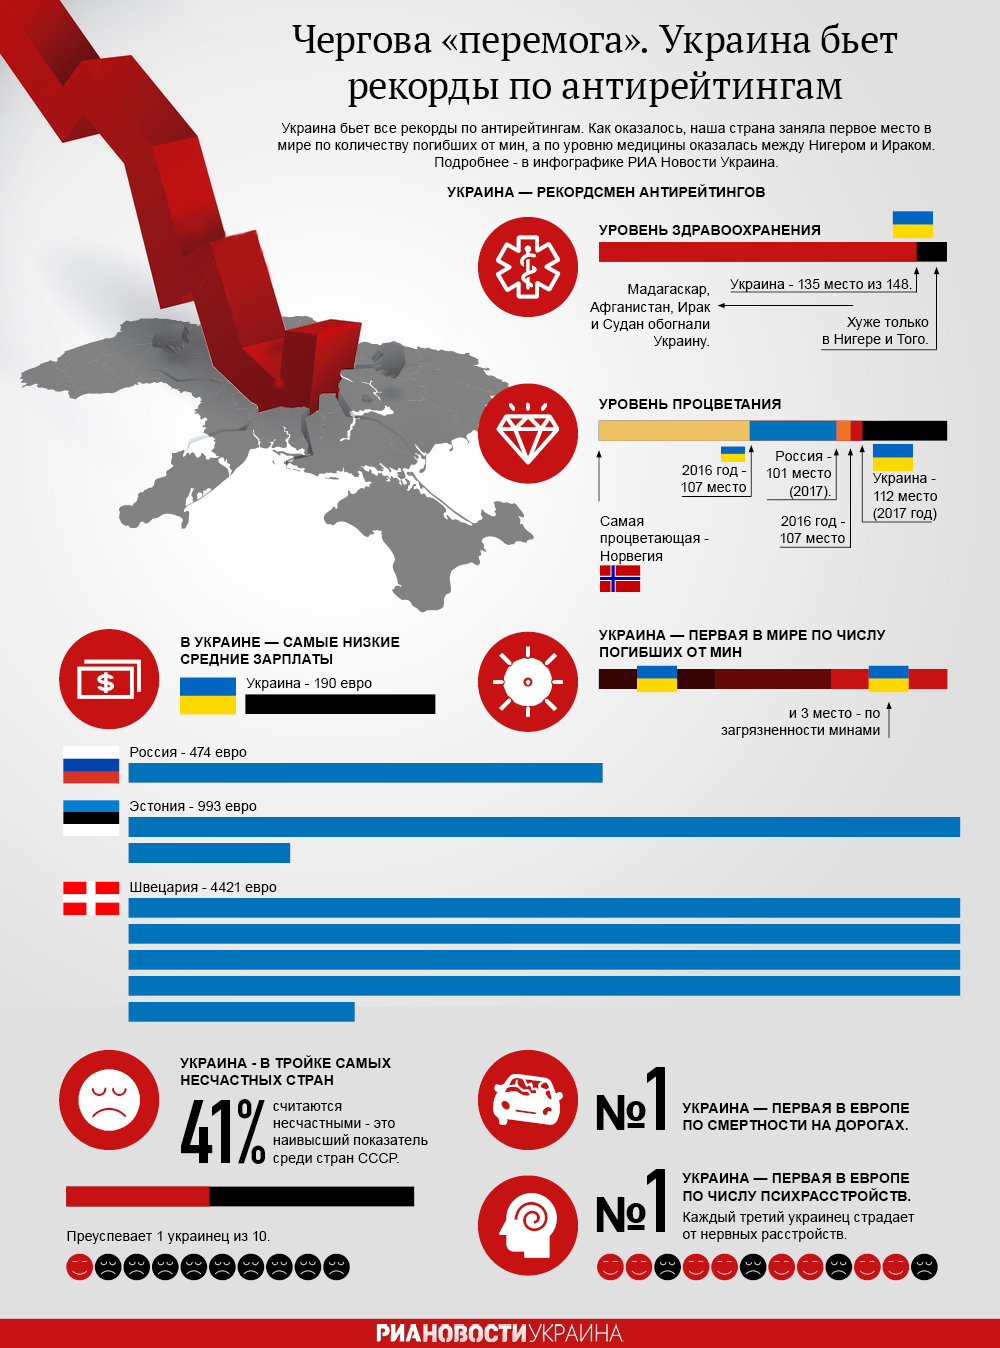 Рекорды Украины в антирейтингах. Инфографика